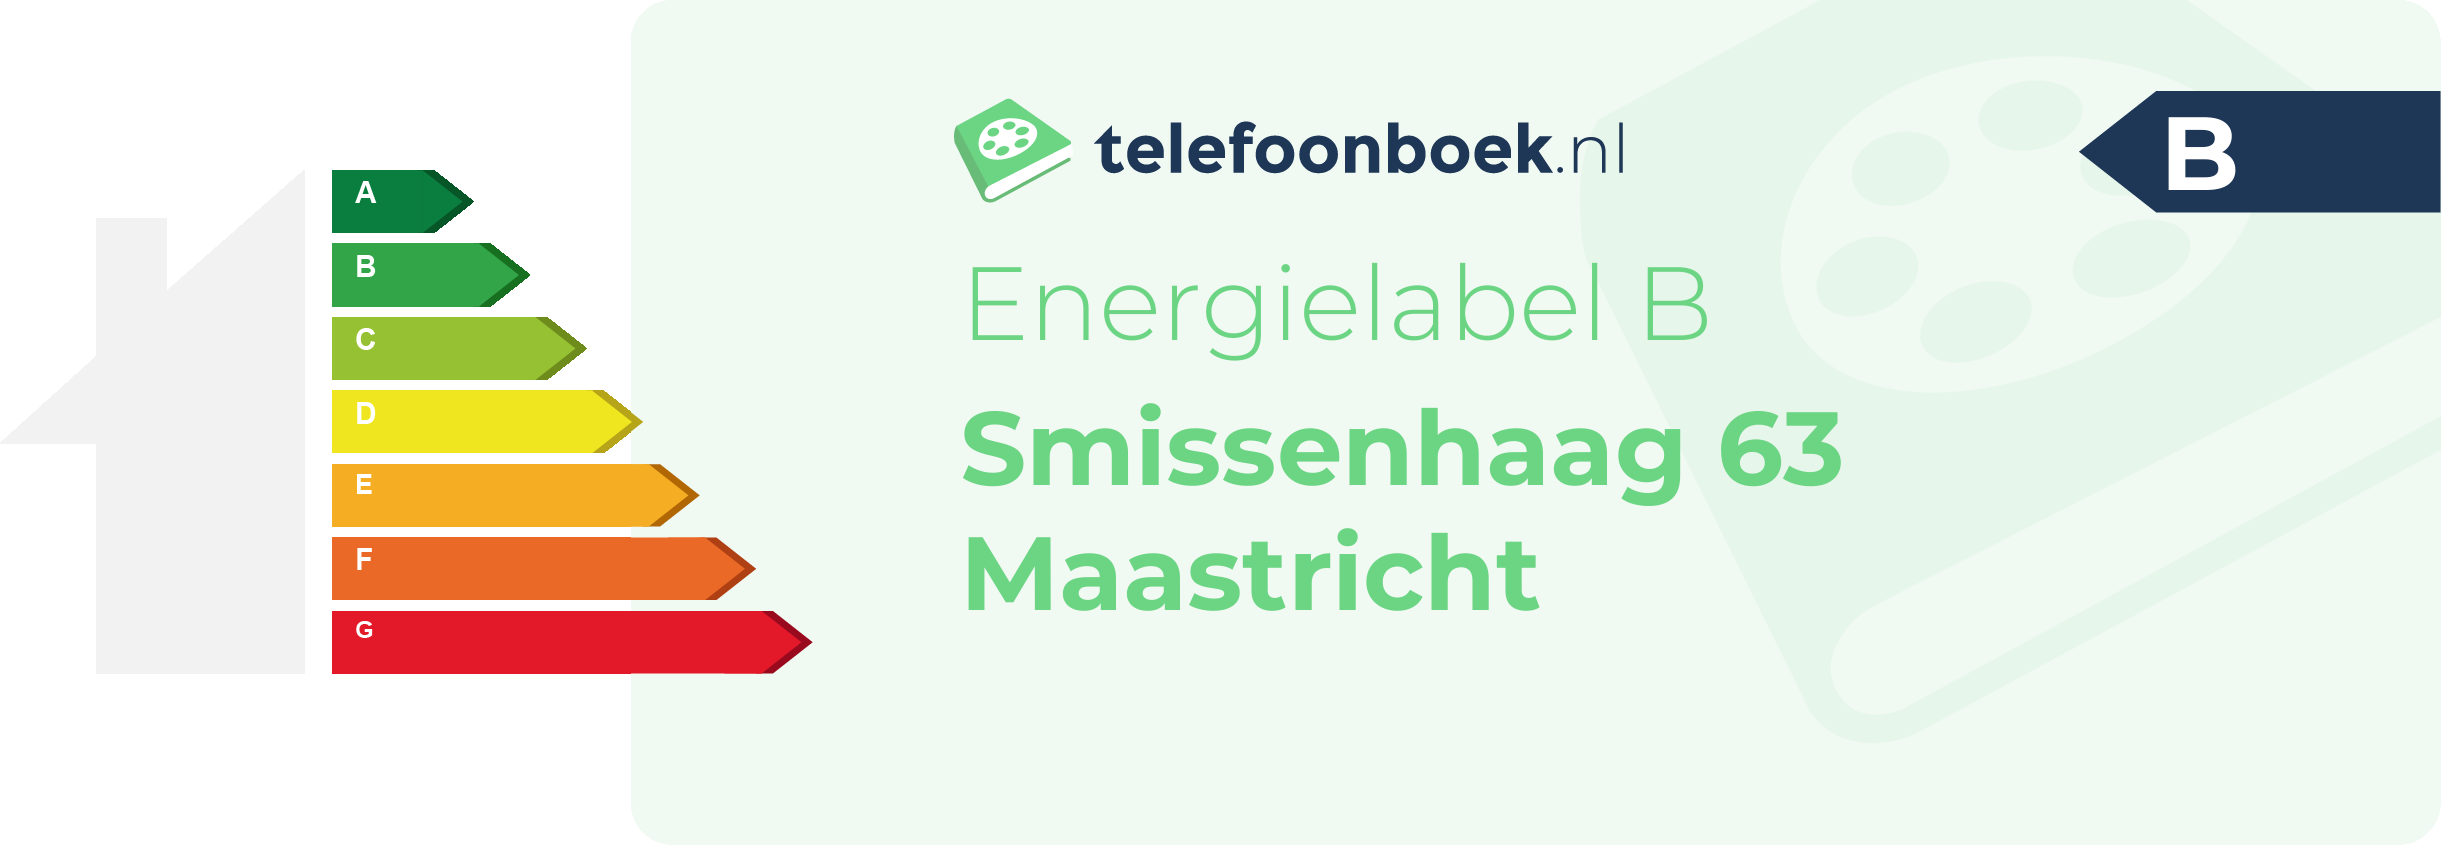 Energielabel Smissenhaag 63 Maastricht